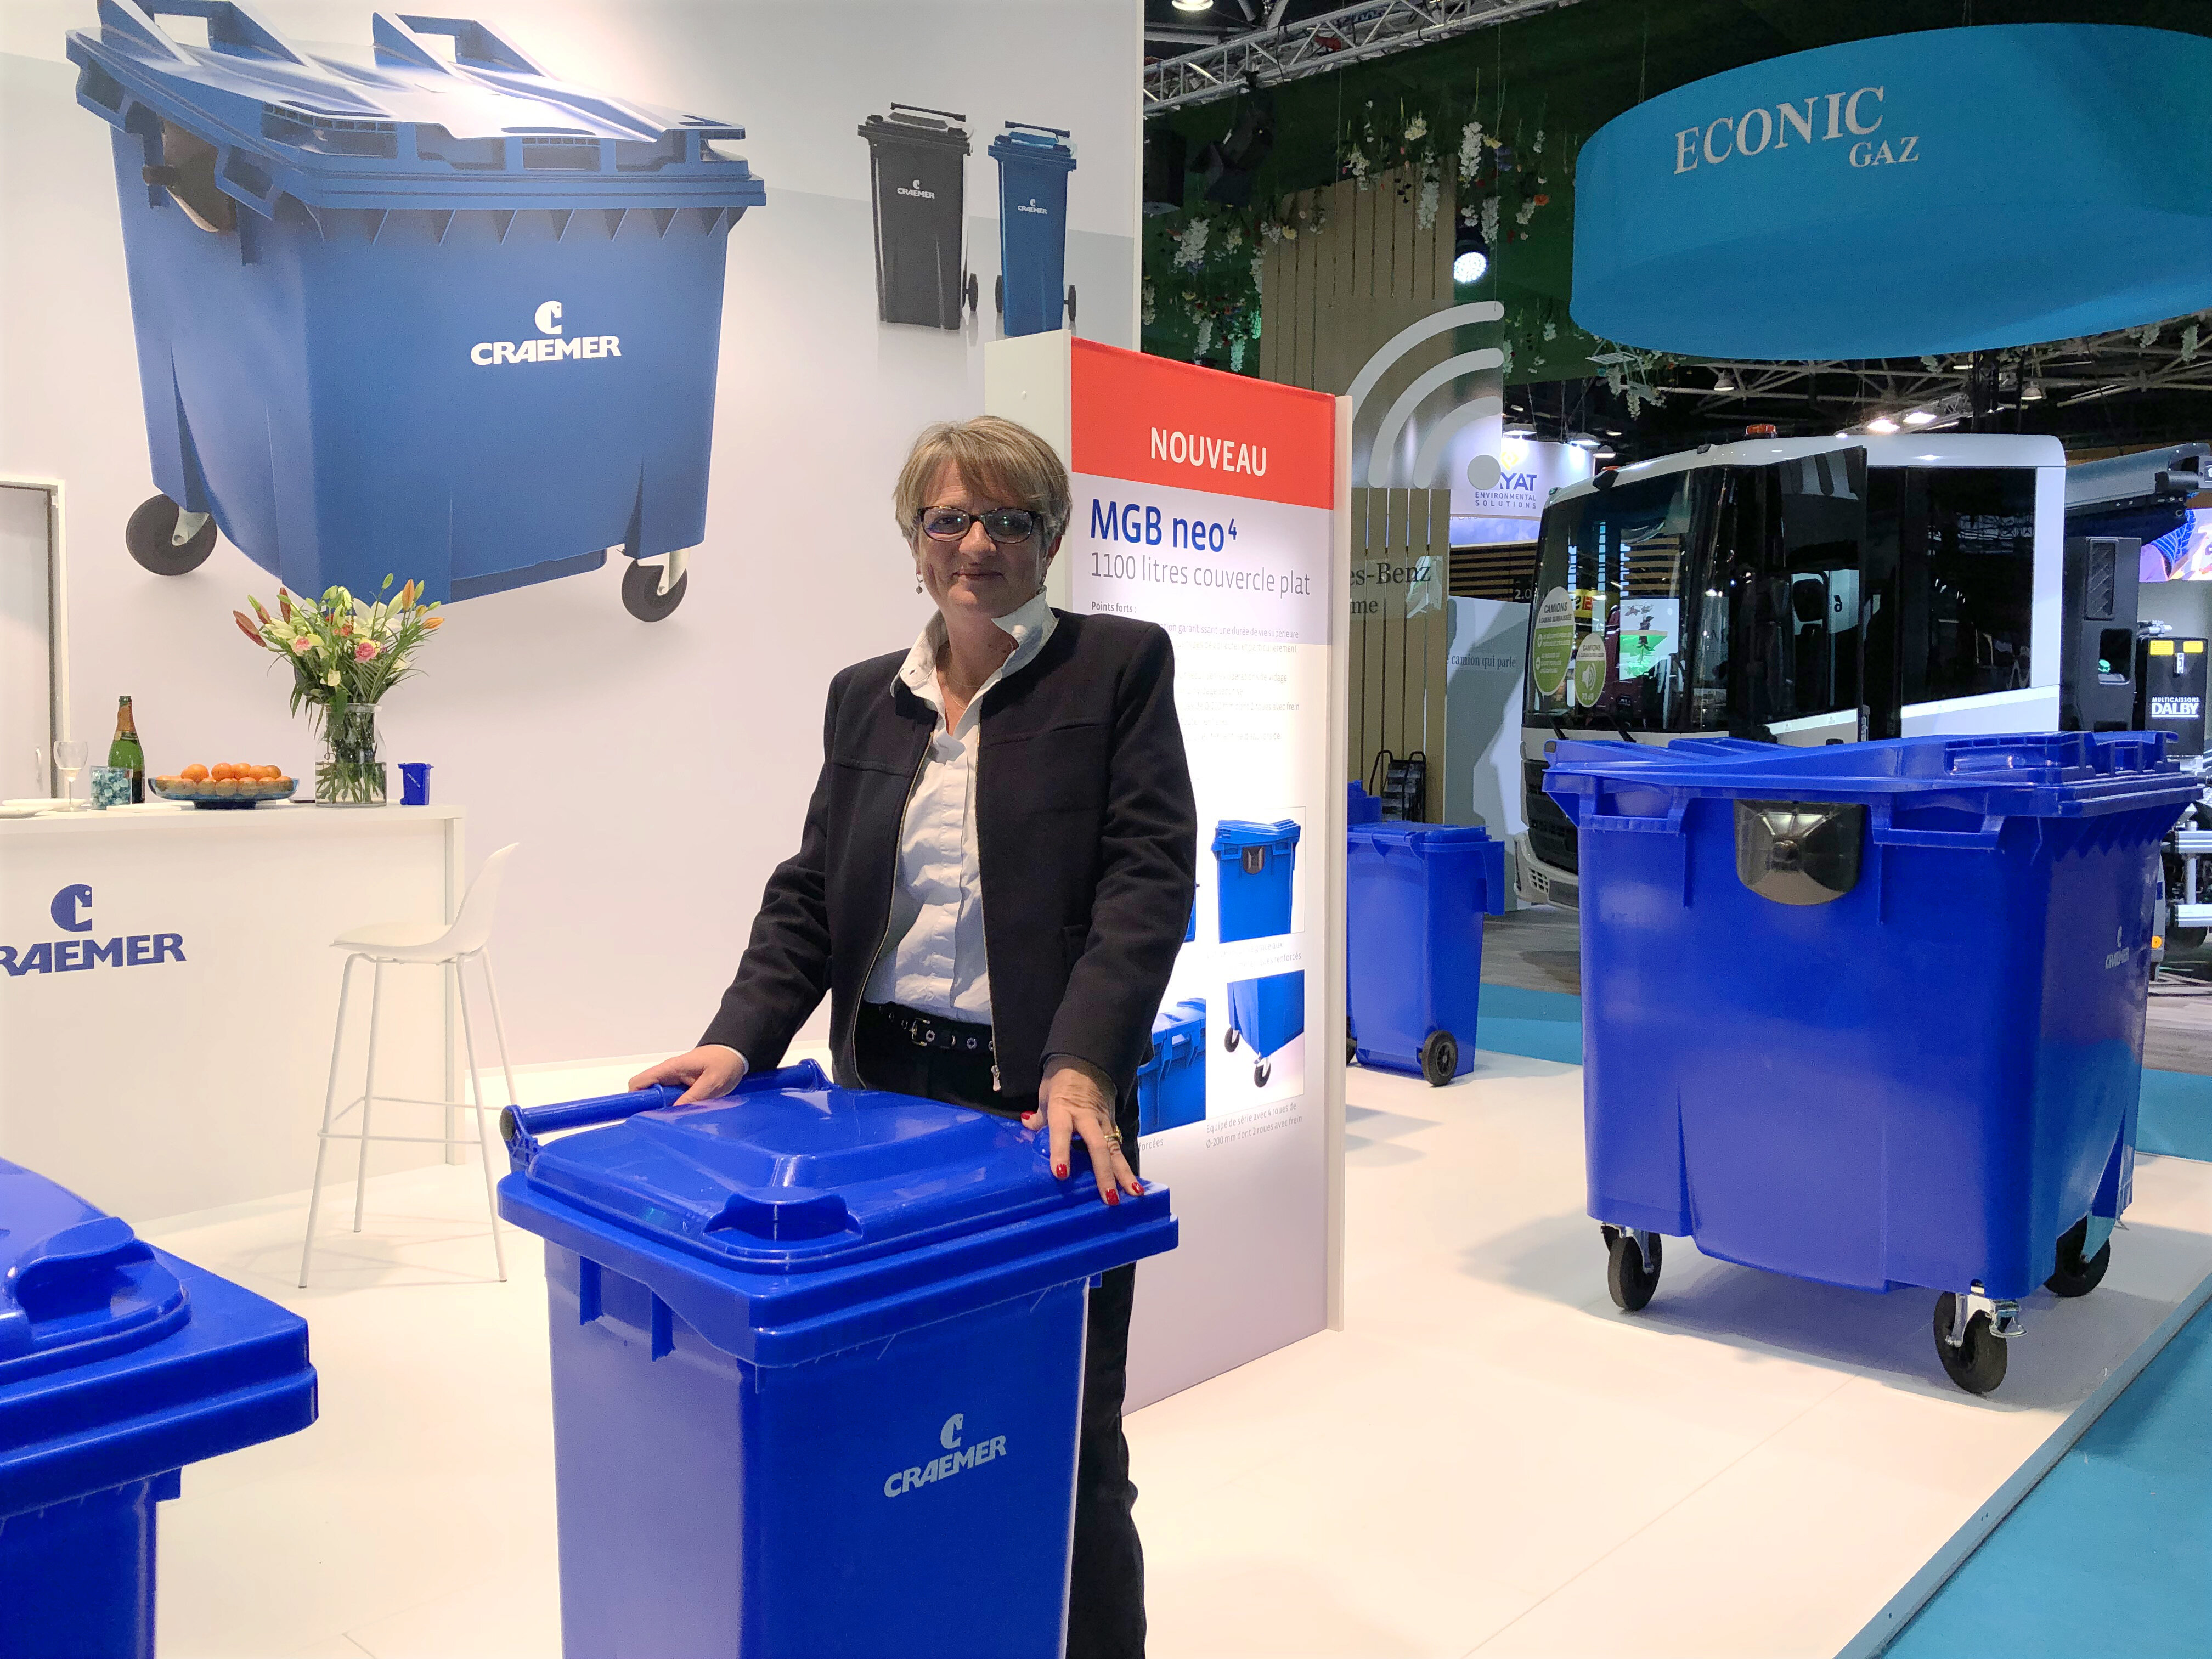 Craemer starts wheelie bin sales in France